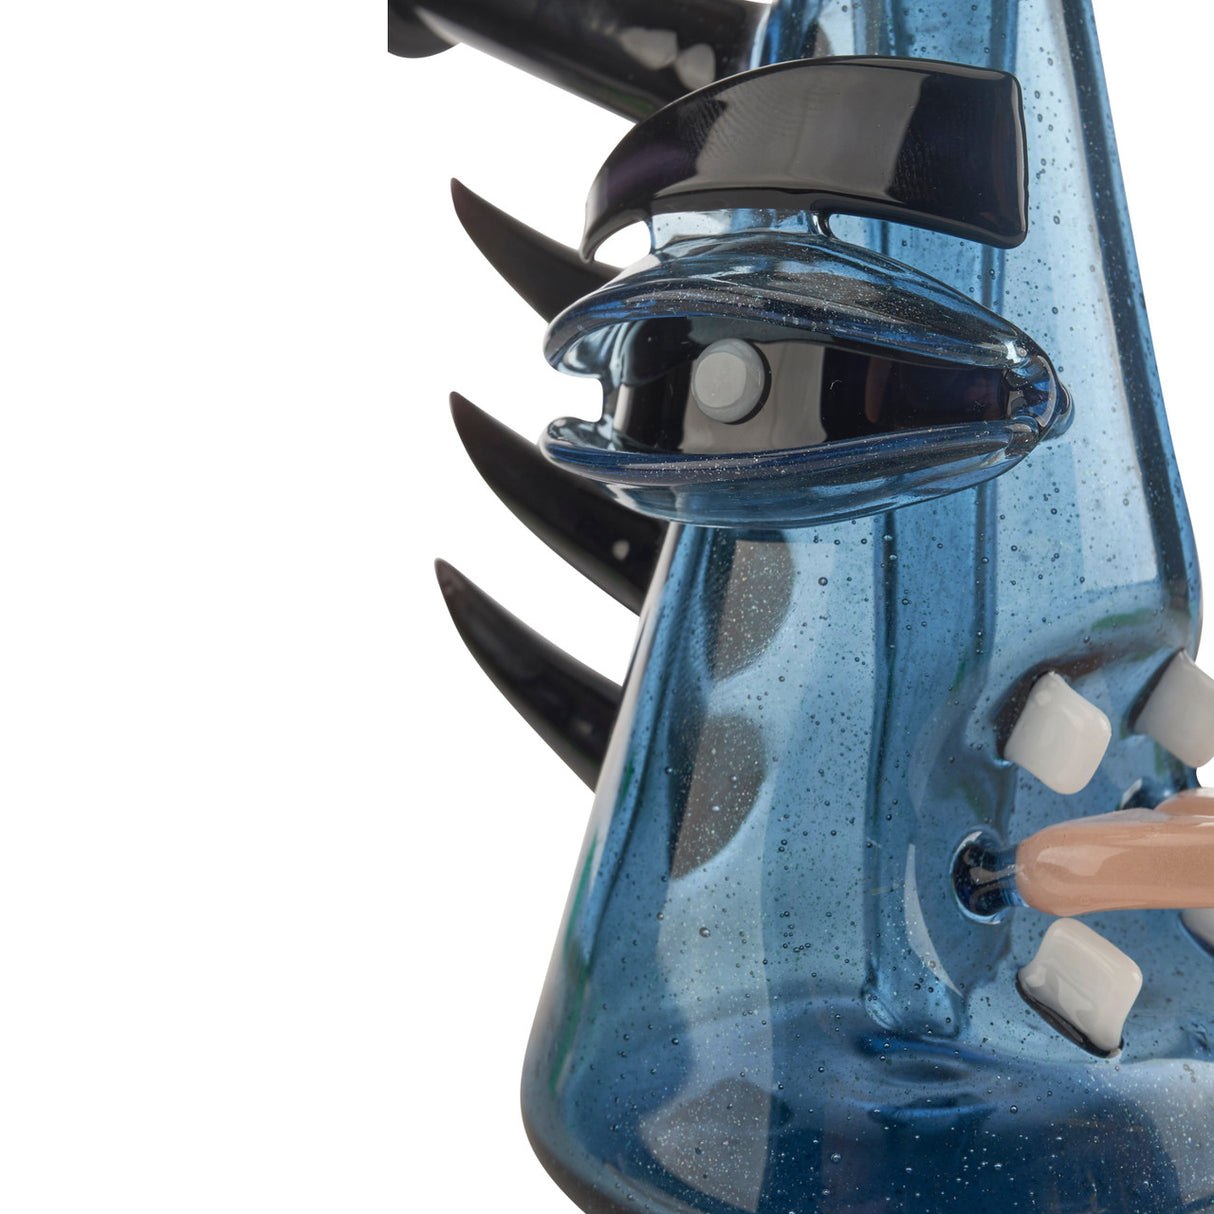 etai rahmil mini shredder blue dab rig for dabbing dabs